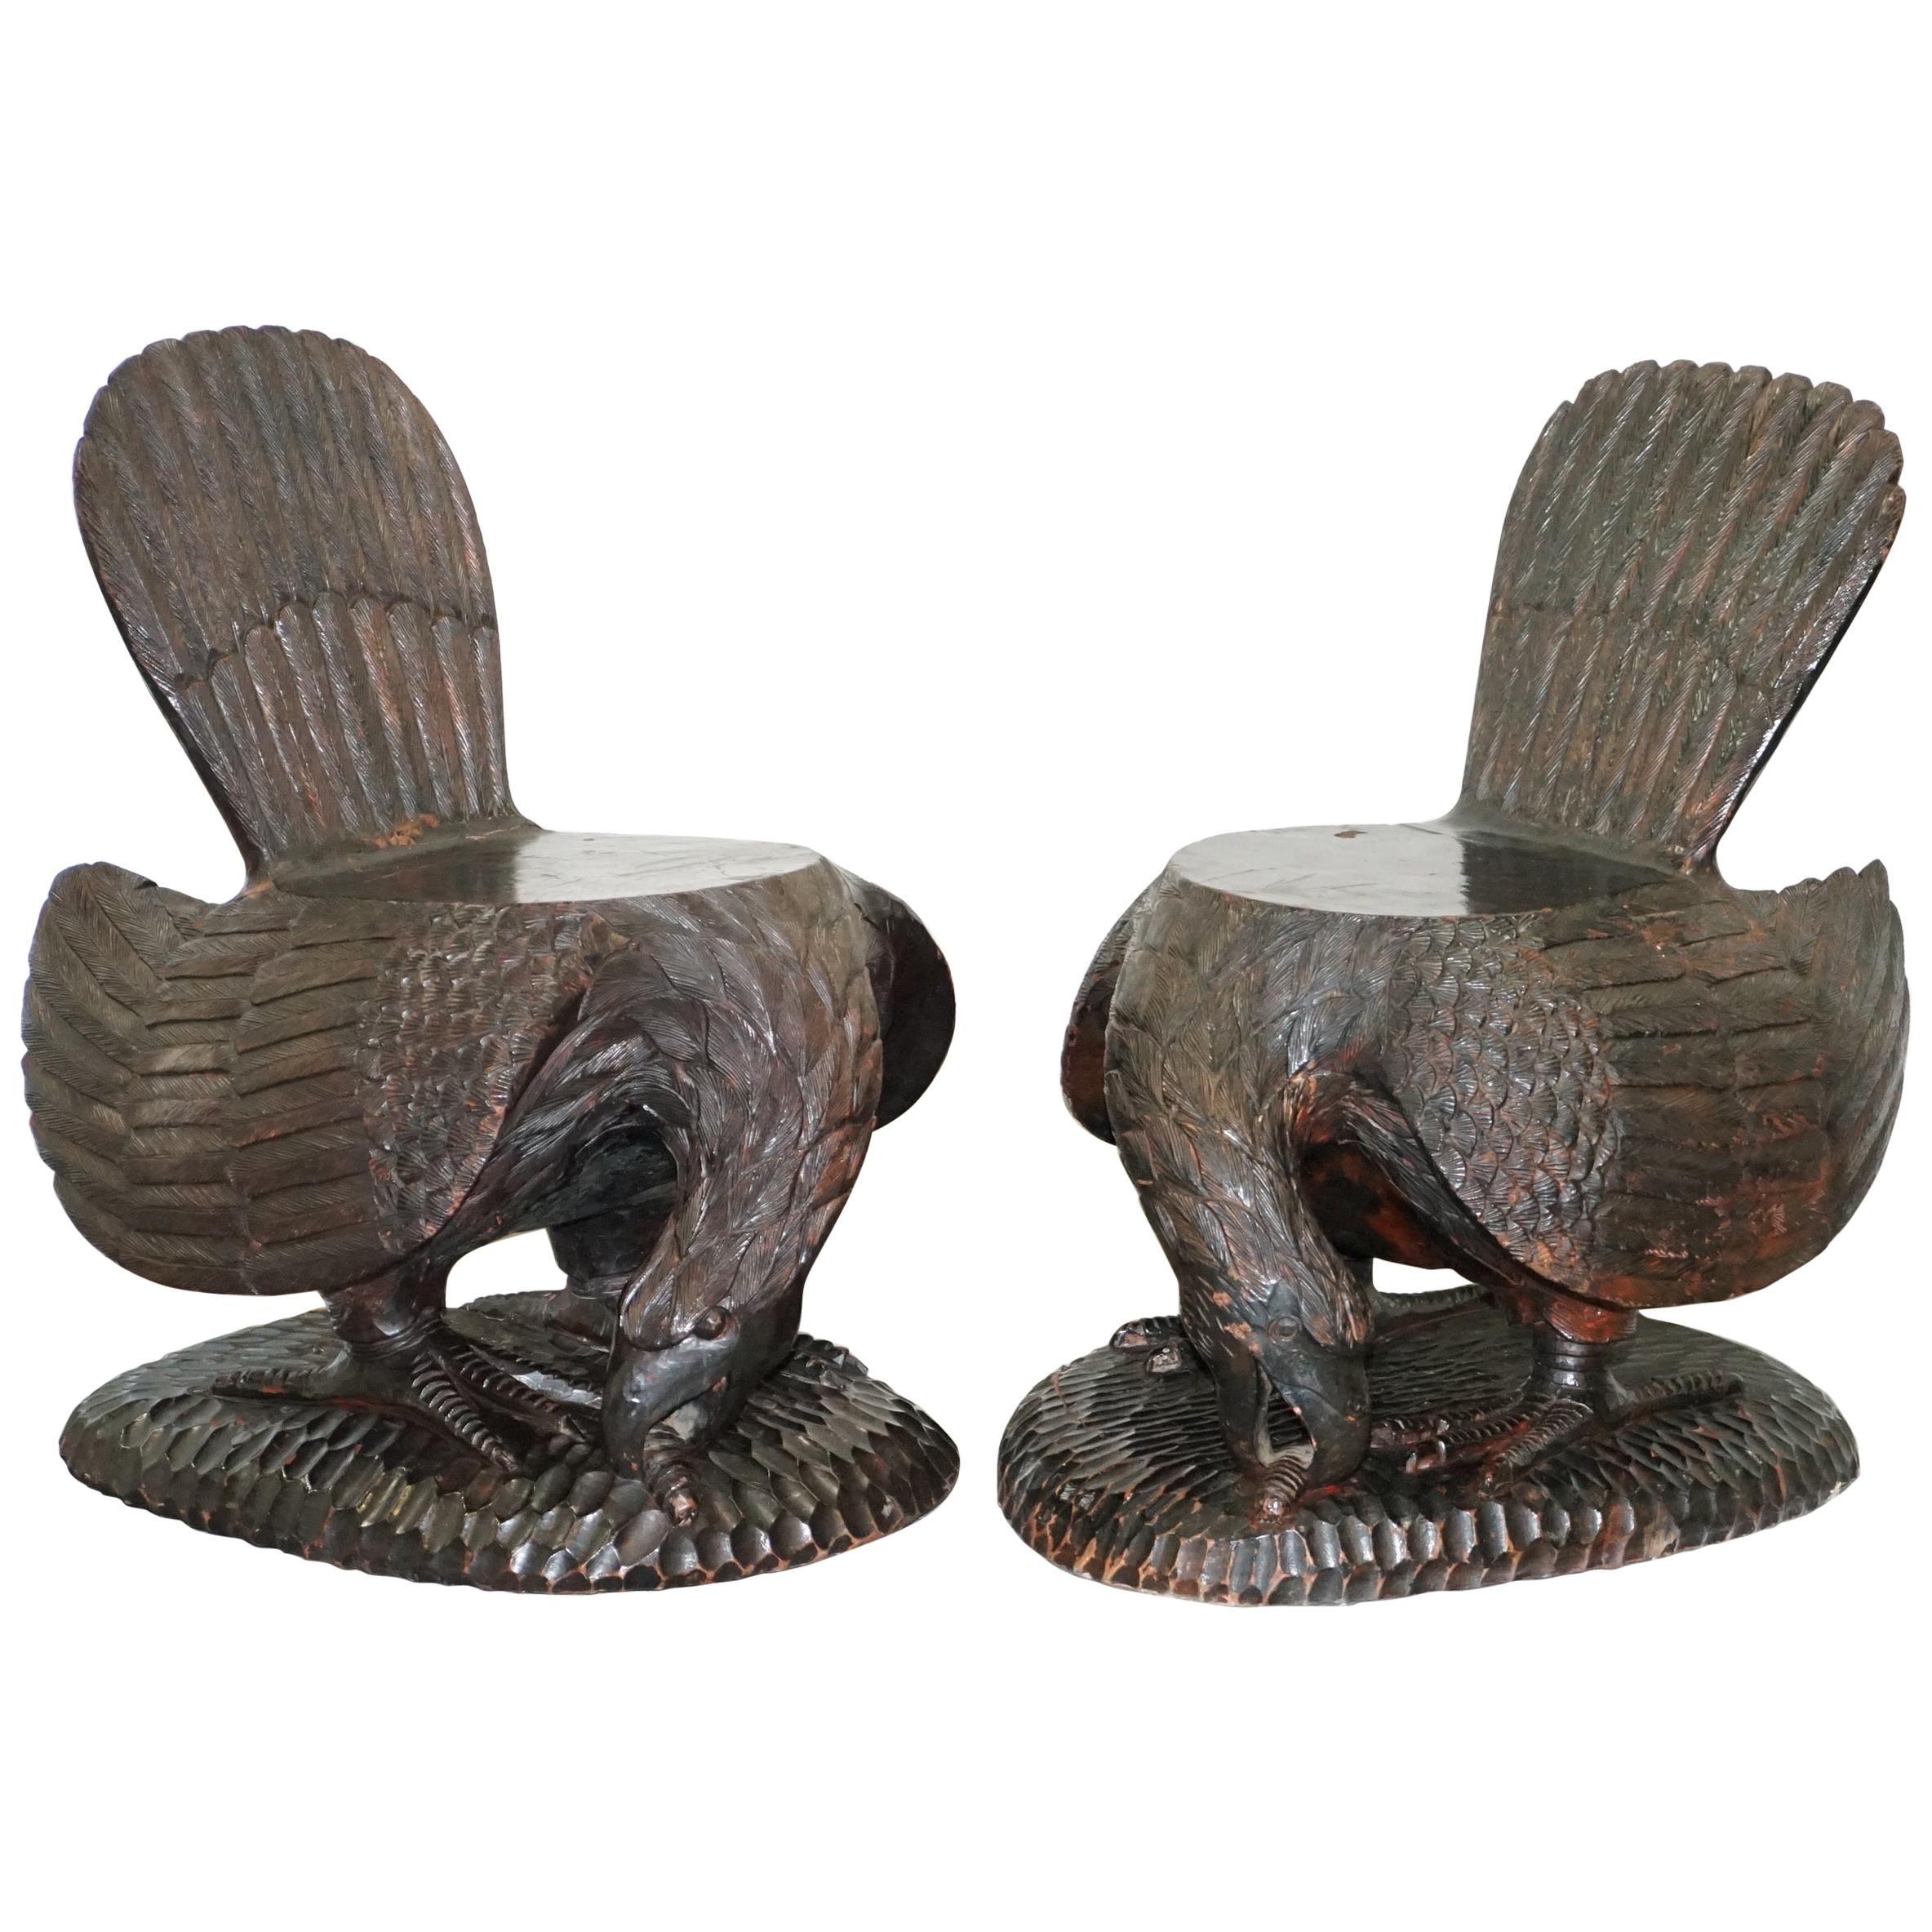 Paire de fauteuils américains ornés en bois massif sculpté à la main représentant un aigle, datant d'environ 1900